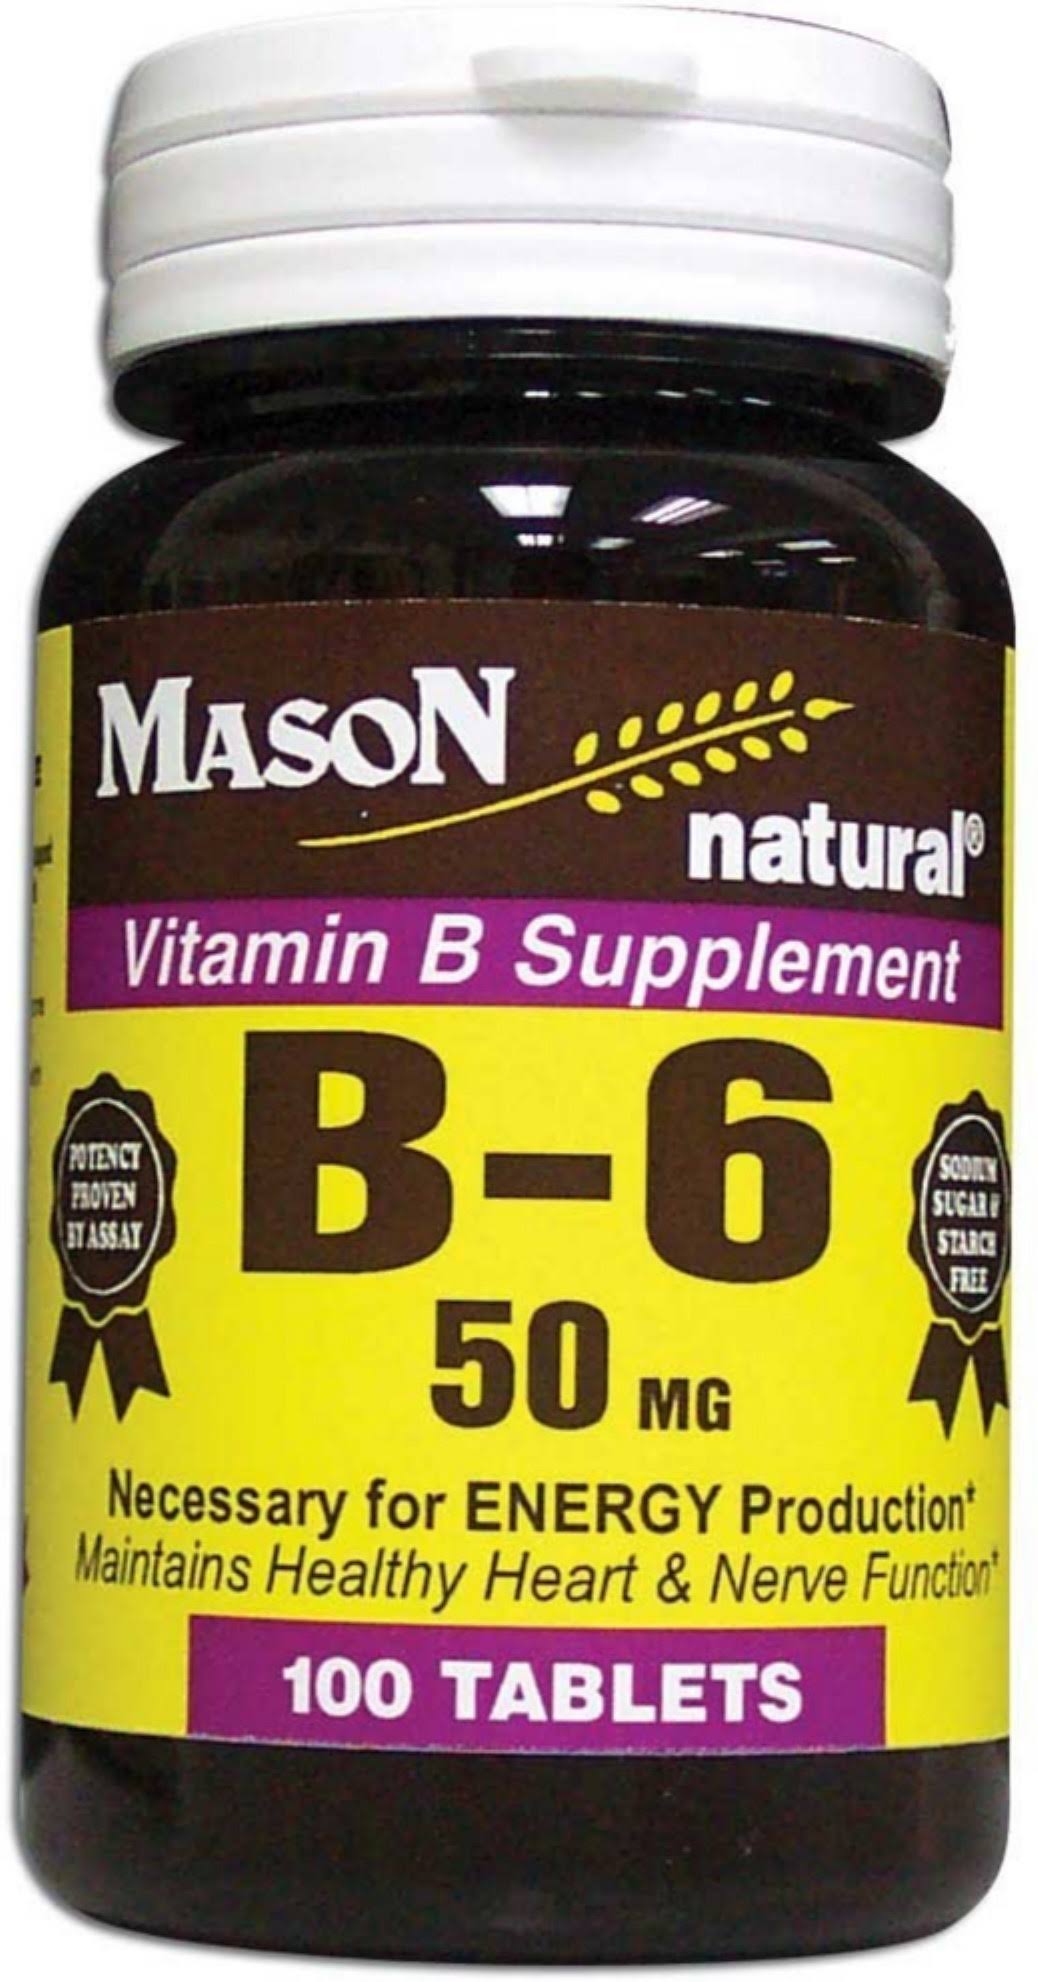 Mason Natural Vitamin B6 Dietary Supplement - 50mg, 100ct